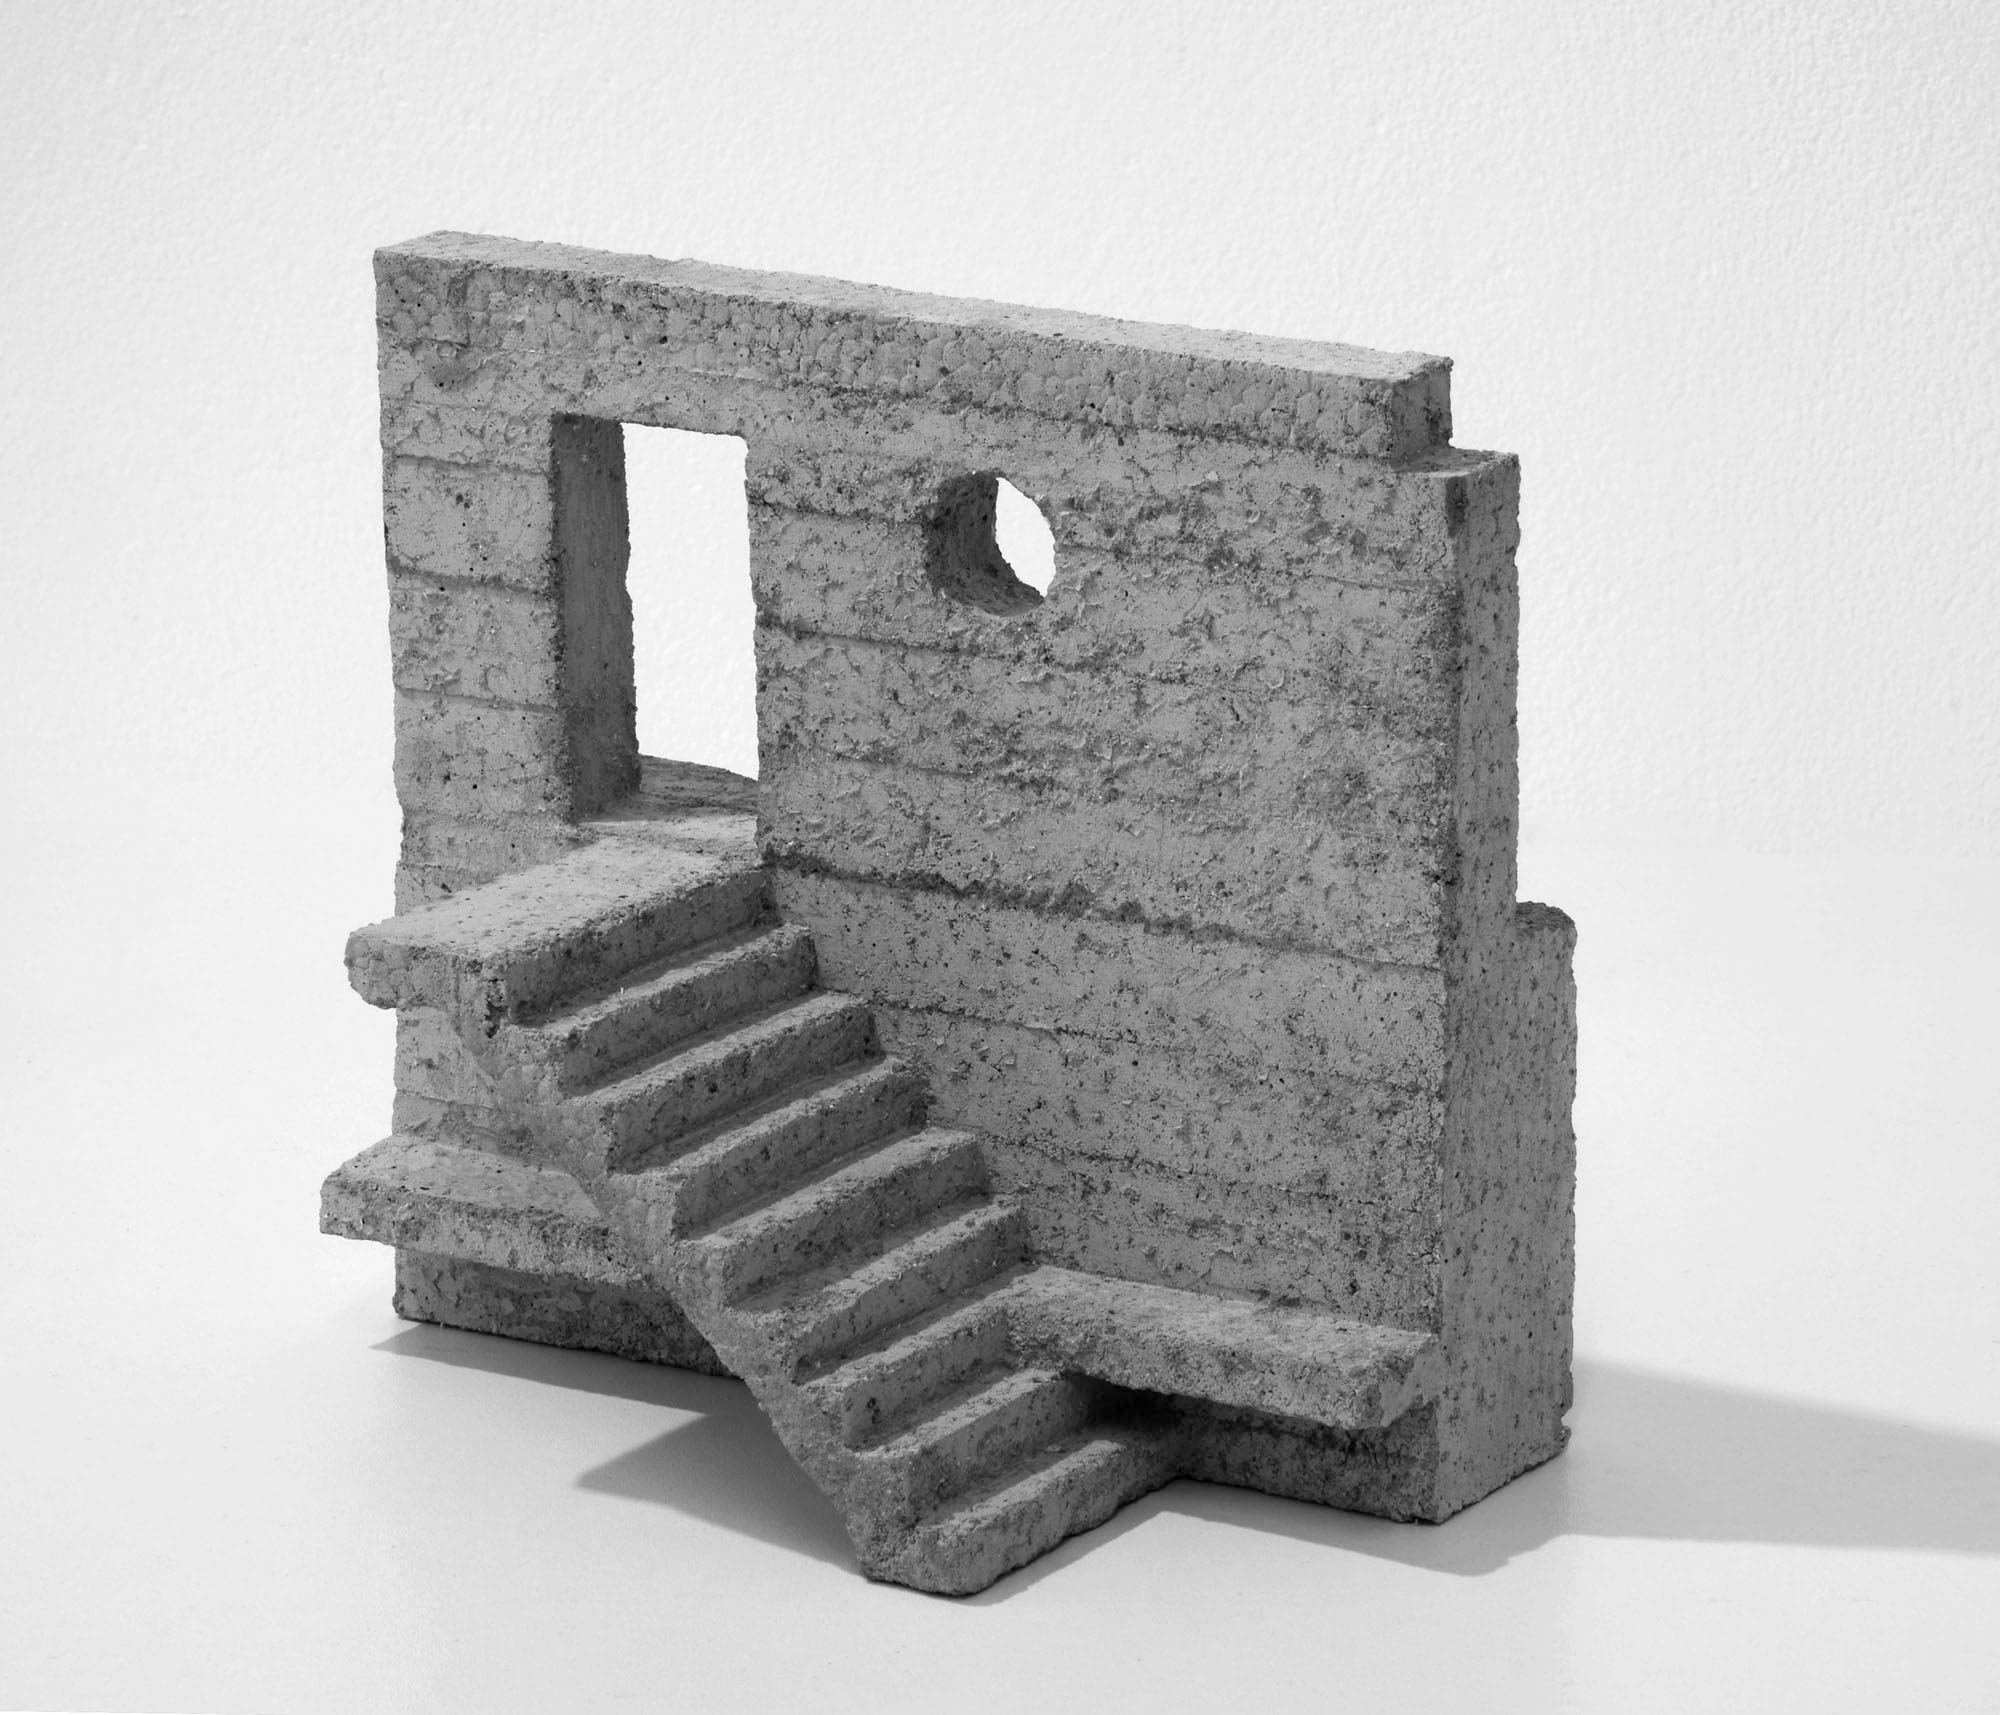 mattia listowski art design objet décoration sculpture béton moulage micro architecture maquette passage édition limitée numérotée signée paris bruxelles 2019